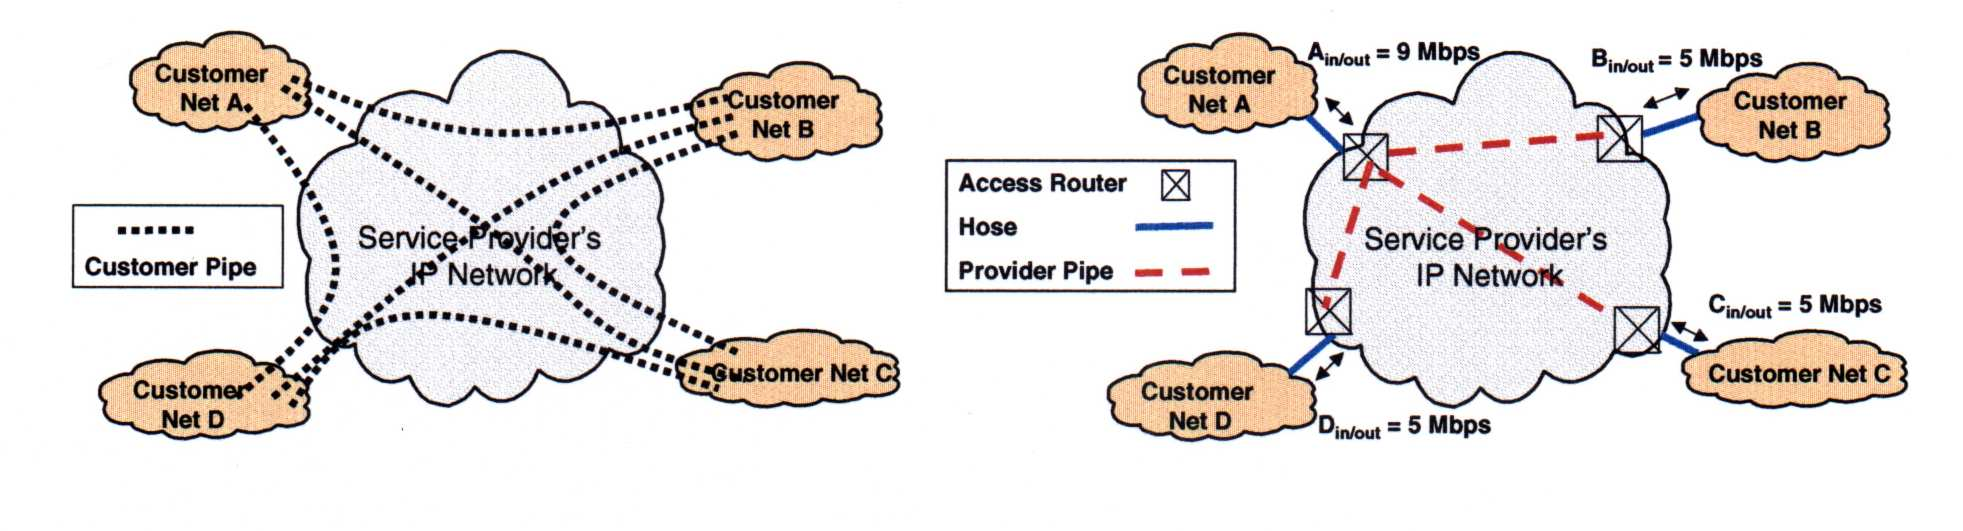 VPN forgalmi modellek Pipe (csıvezeték) modell Végpont-végpont közötti forgalom nagysága egyenként Forgalmi mátrix Hose modell A felhasználó felülete (interface) a hálózat felé Egy végpont összes,